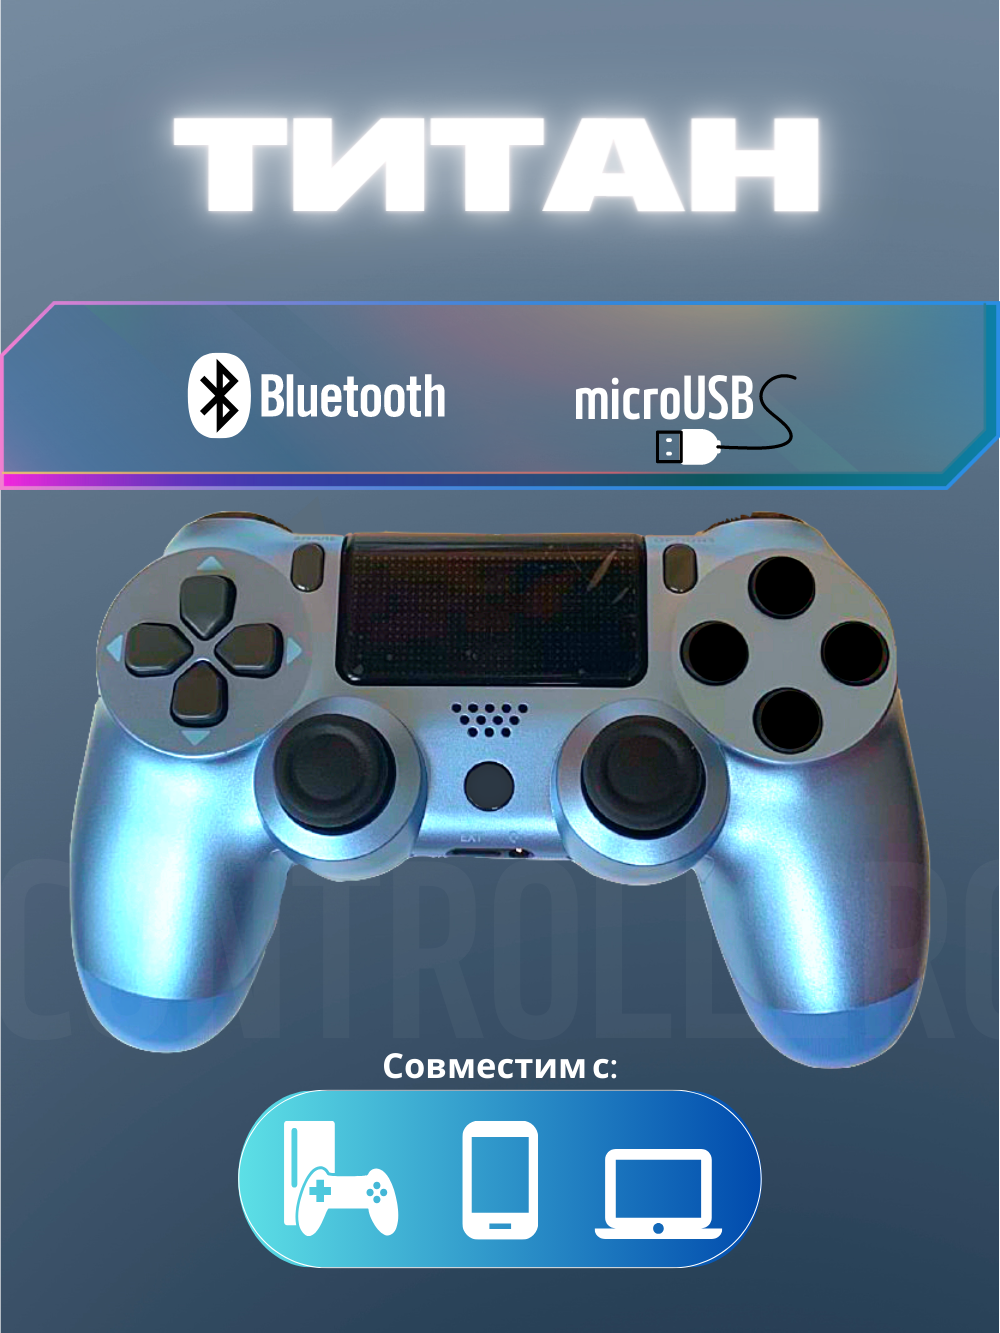 Джойстик, Геймпад Dualshok 4 для игровой приставки Sony Playstatoin 4 , смартфона, ПК (титан)